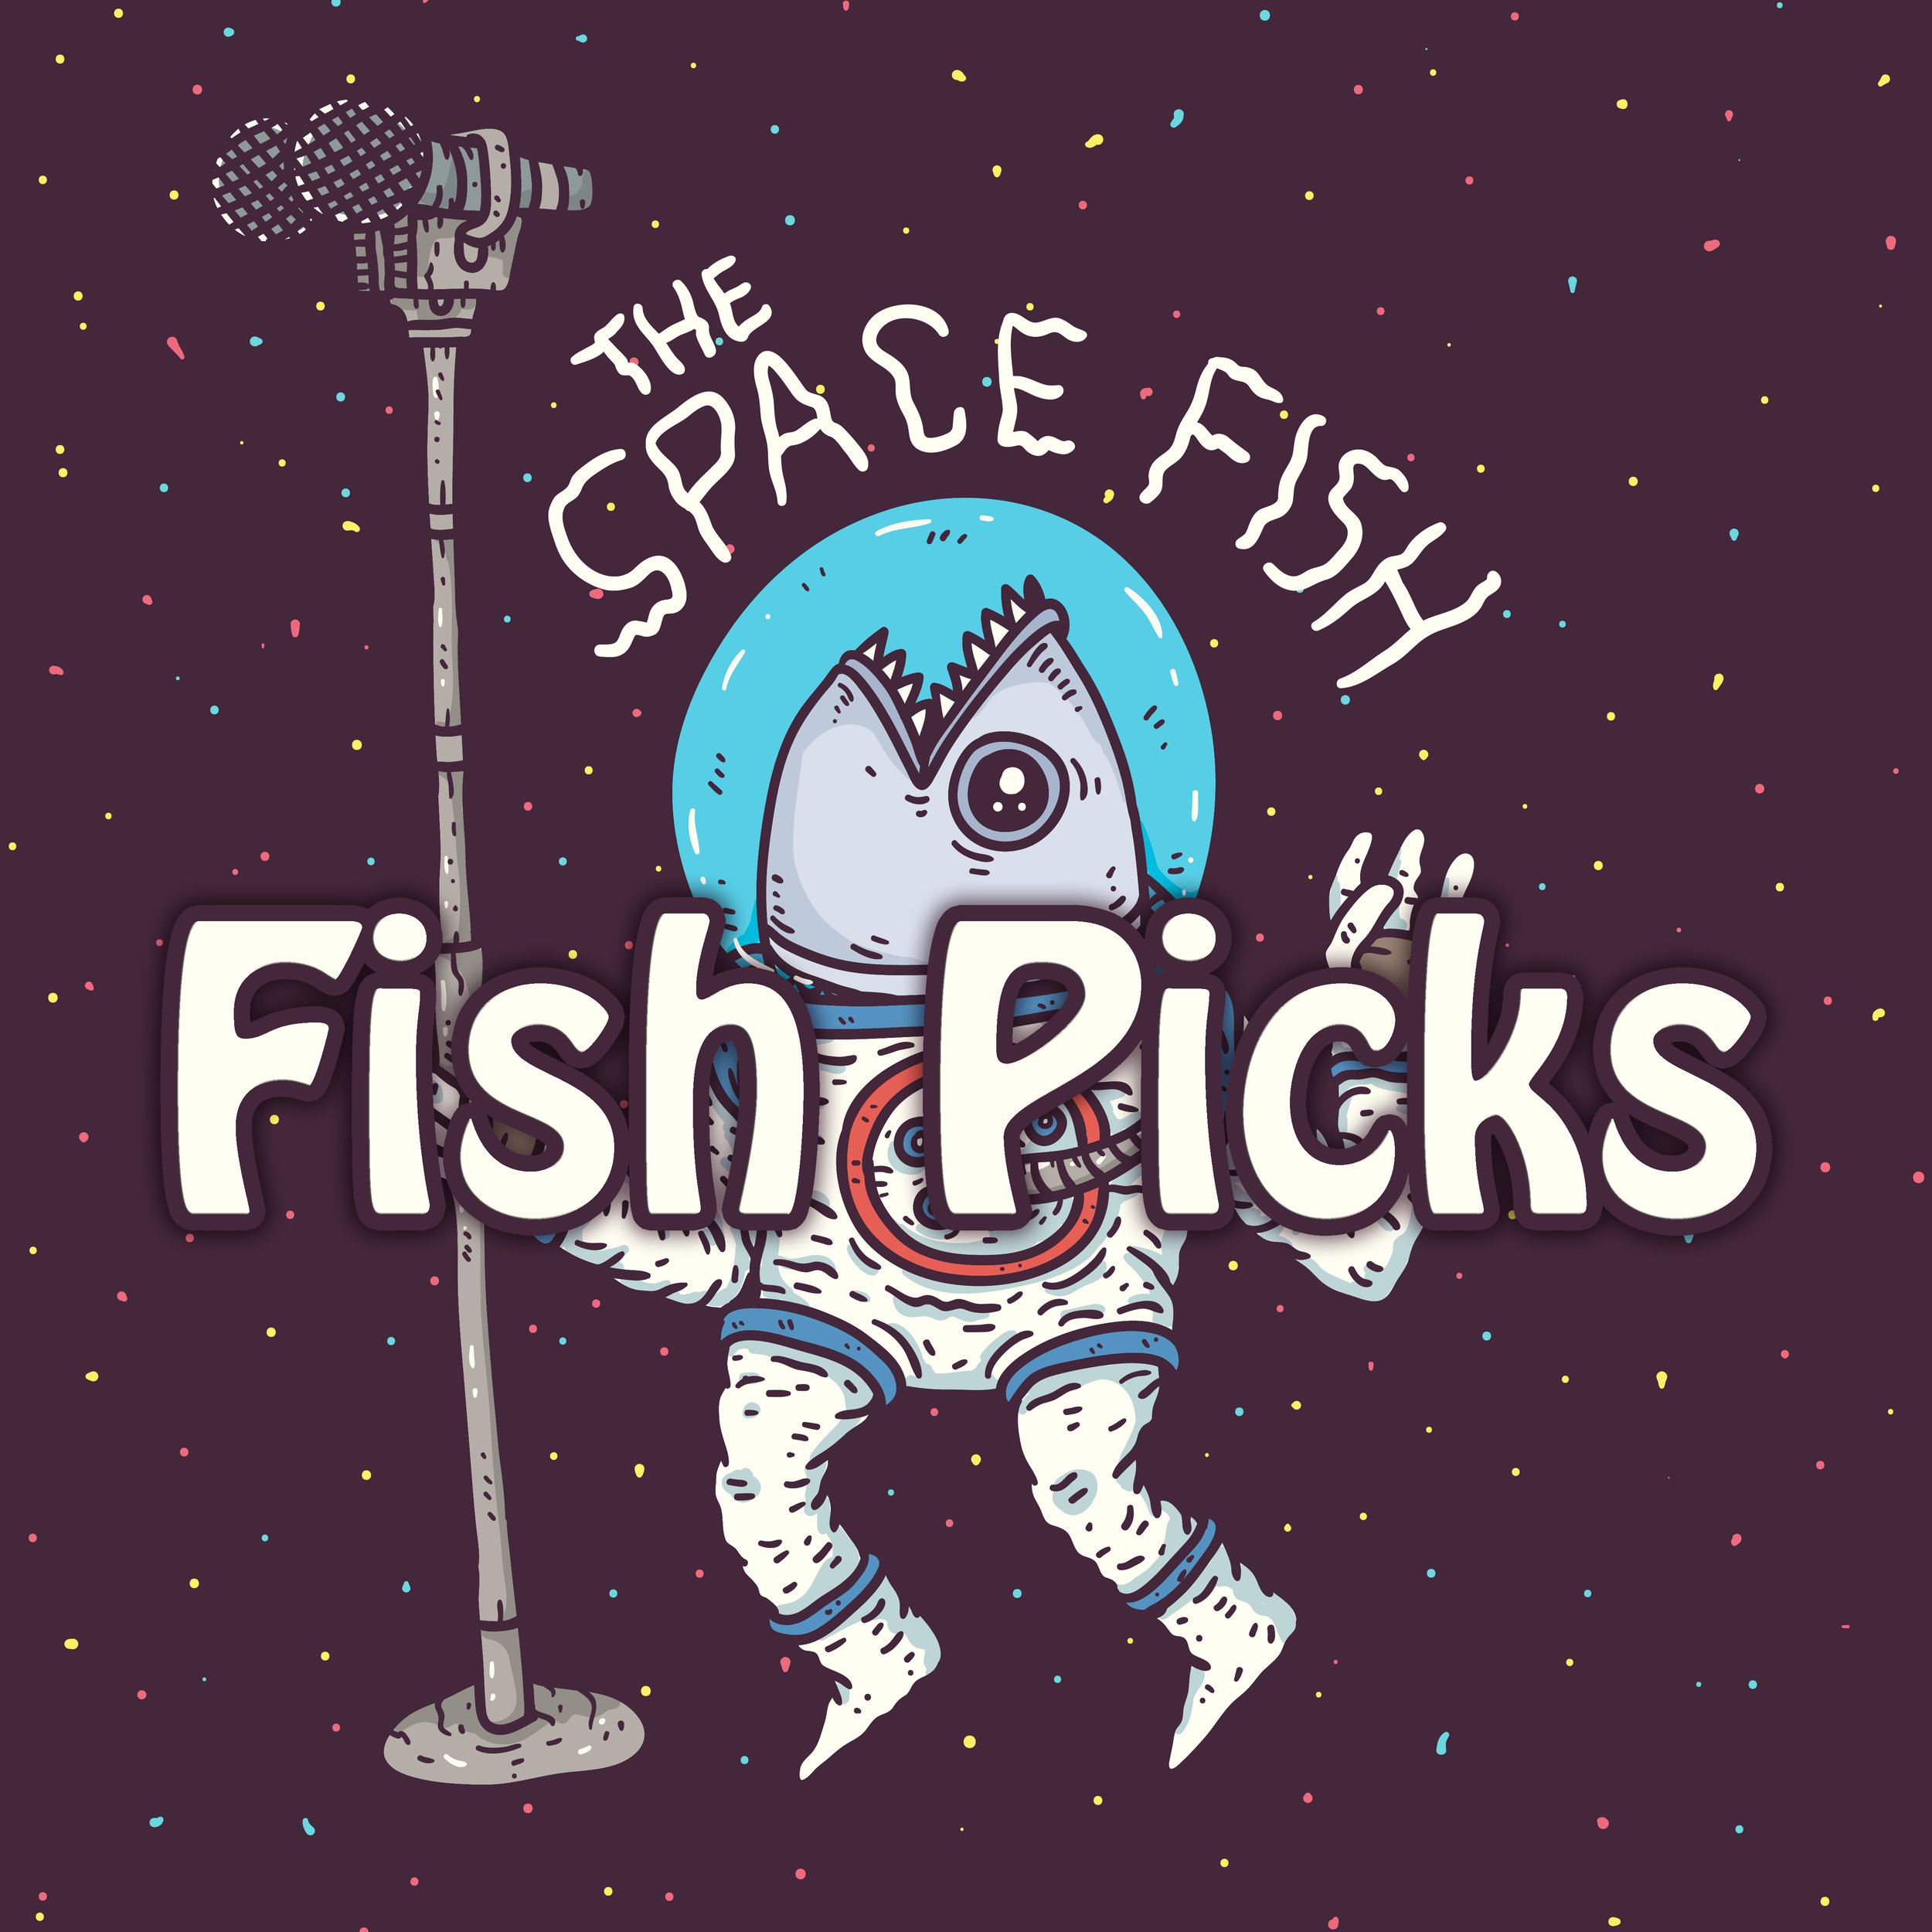 Fish Picks Top 10 Covers 2018 1.16.19